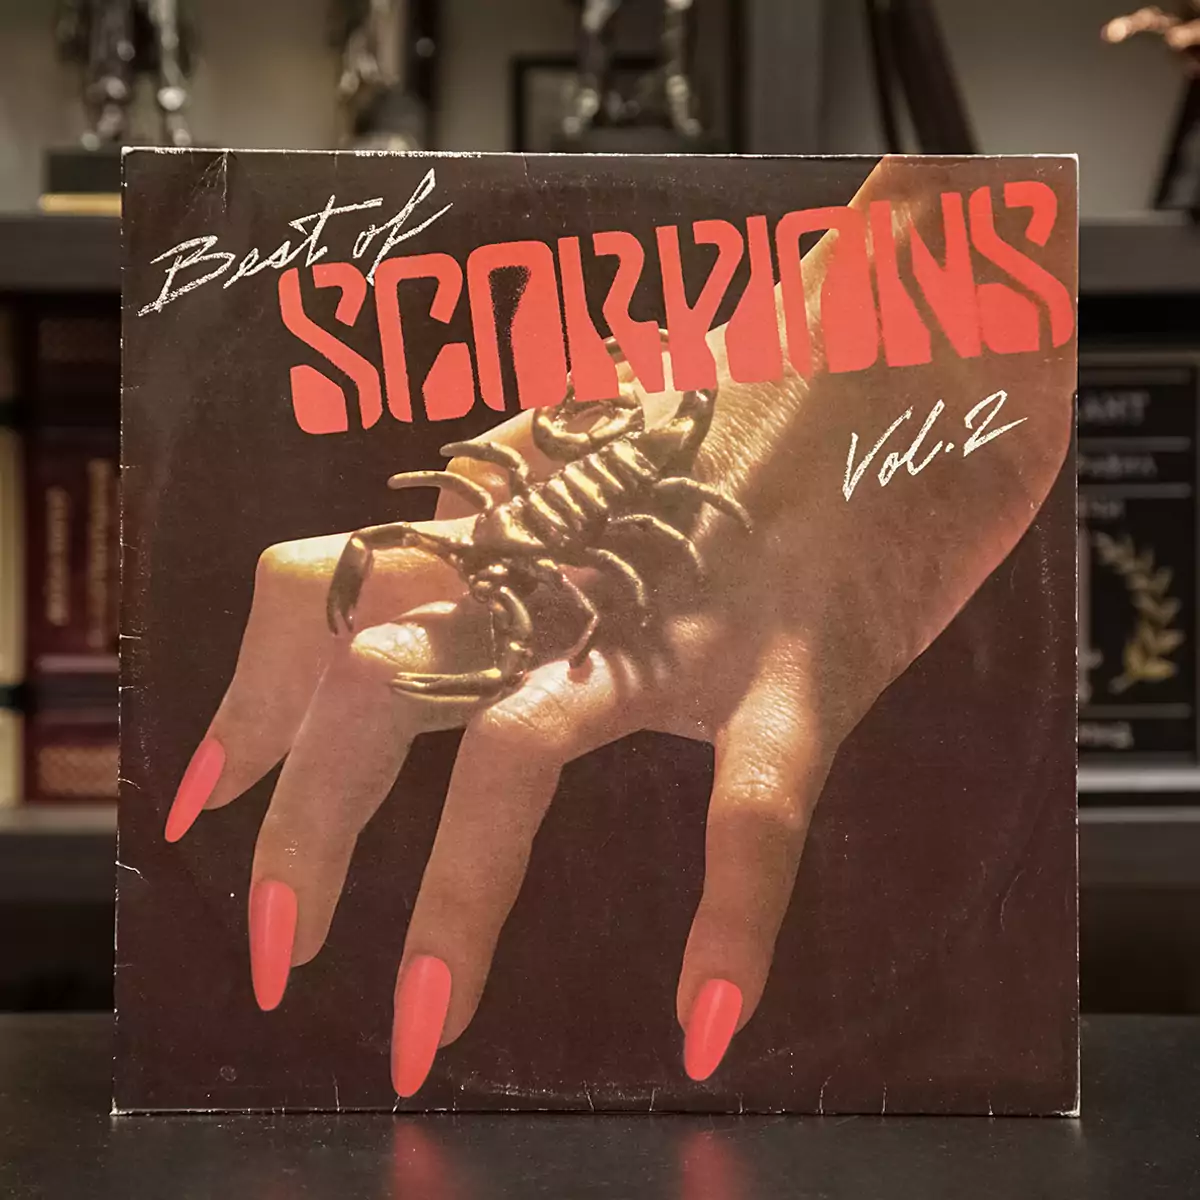 Виниловая пластинка "Best of Scorpions" (часть 2)